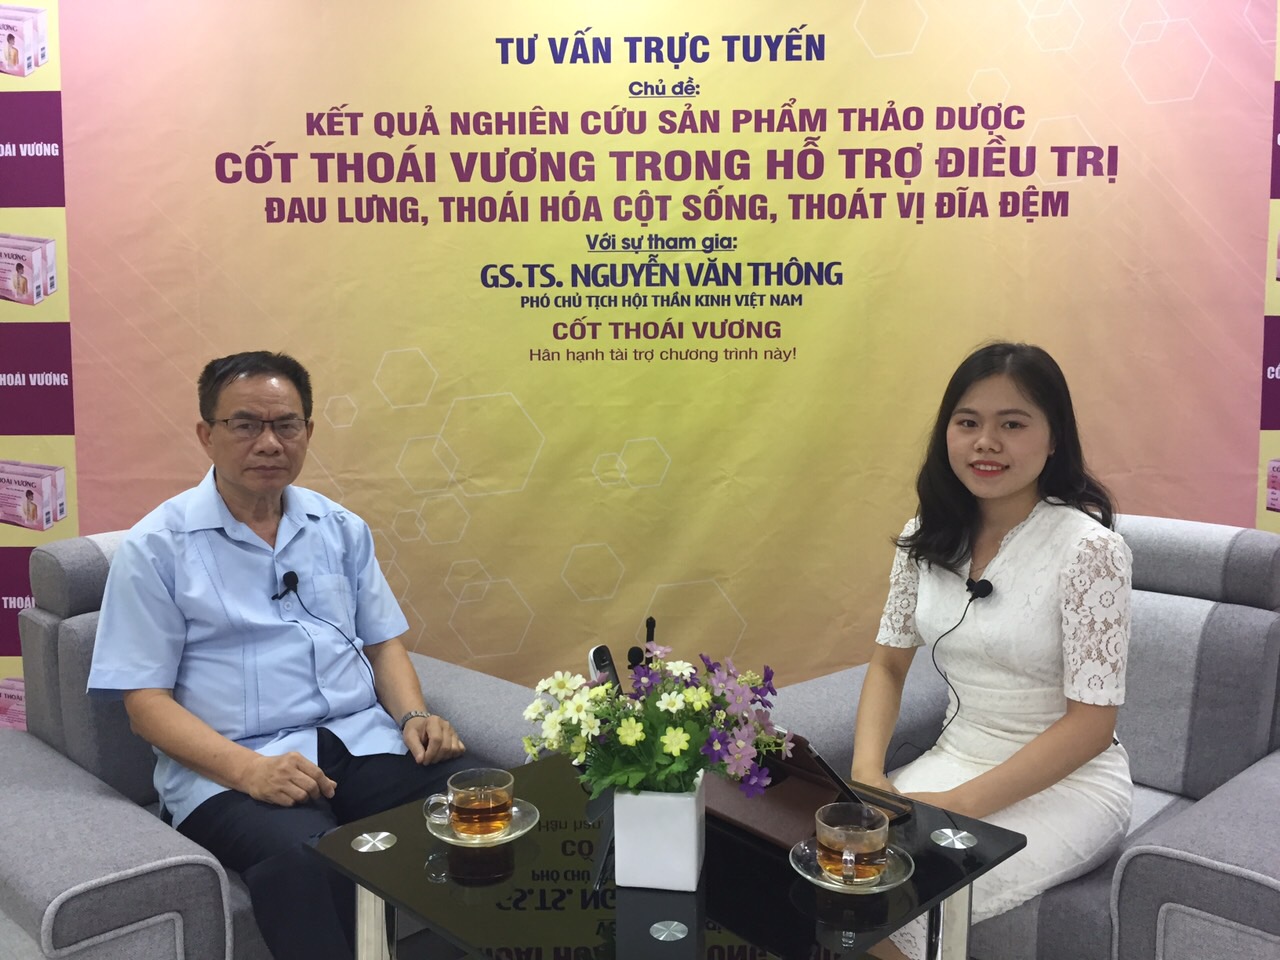 Giao lưu trực tuyến cùng chuyên gia Nguyễn Văn Thông